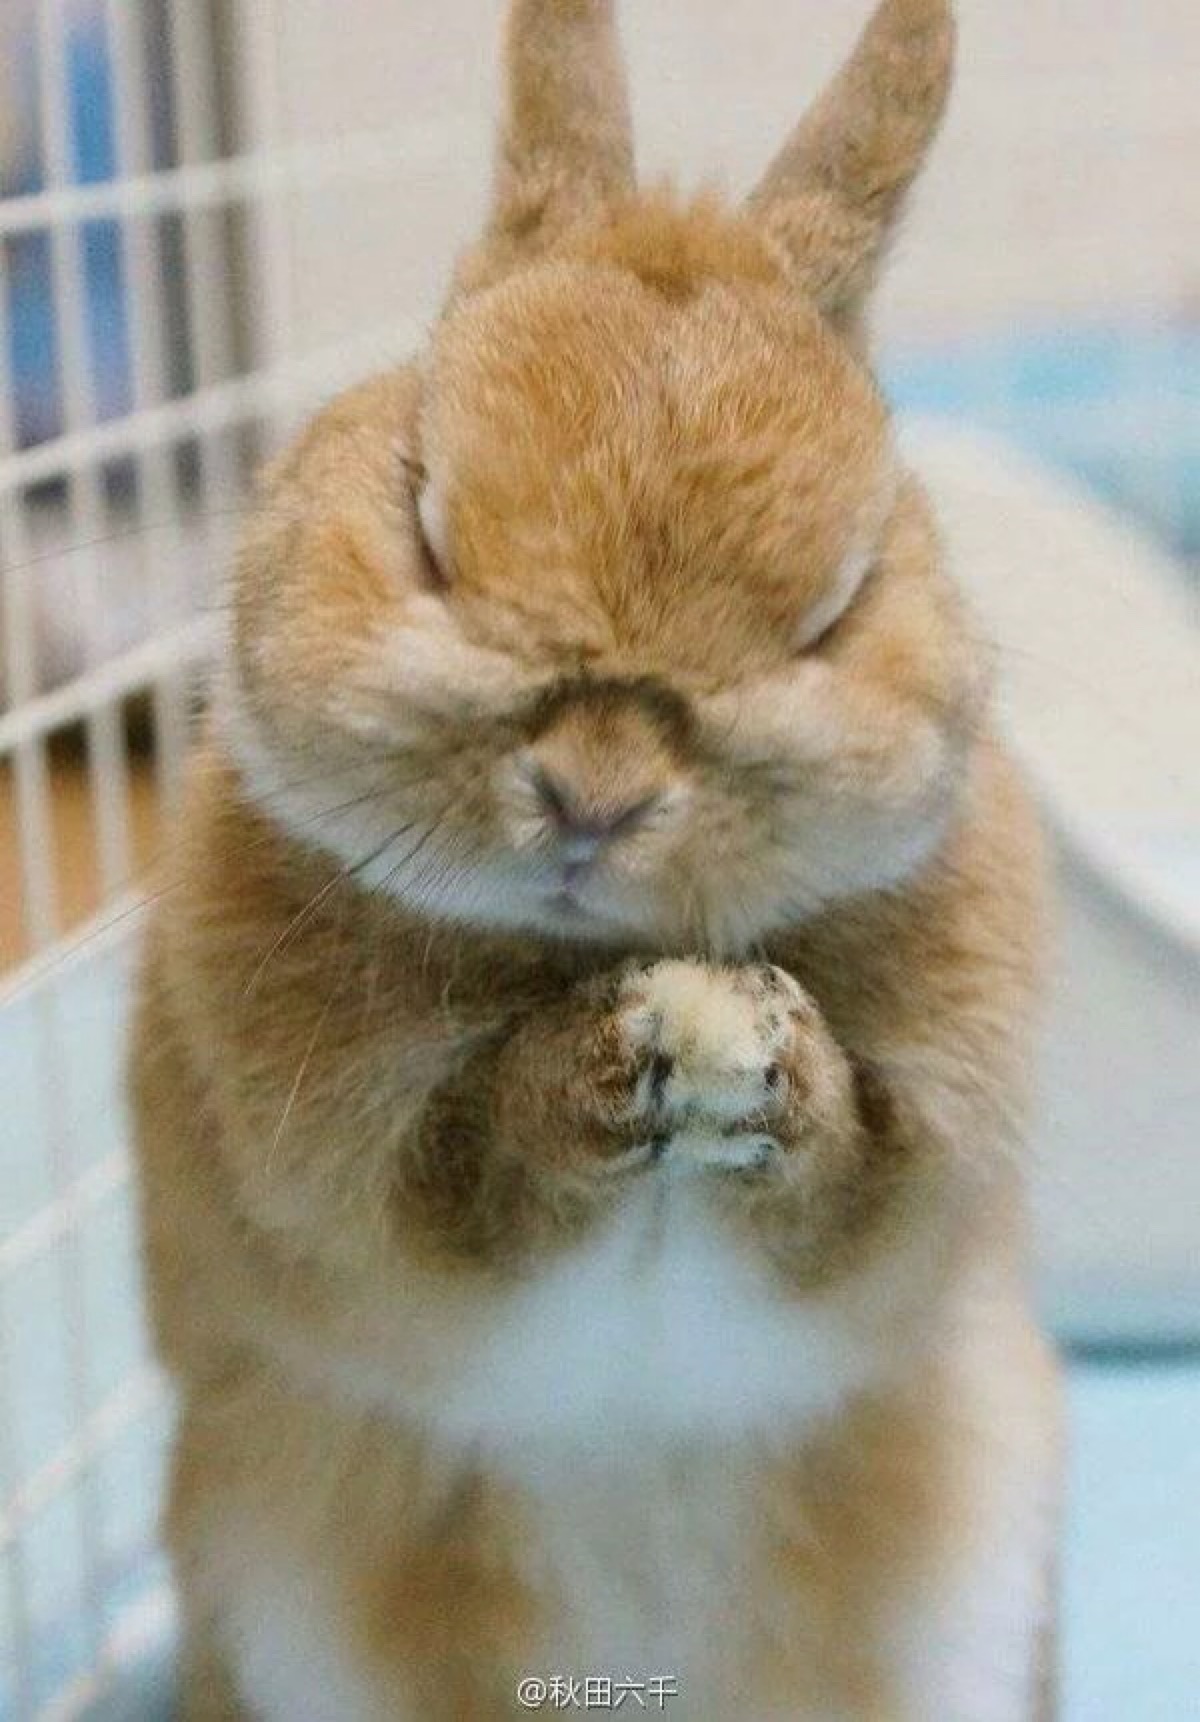 祈祷的兔子 萌